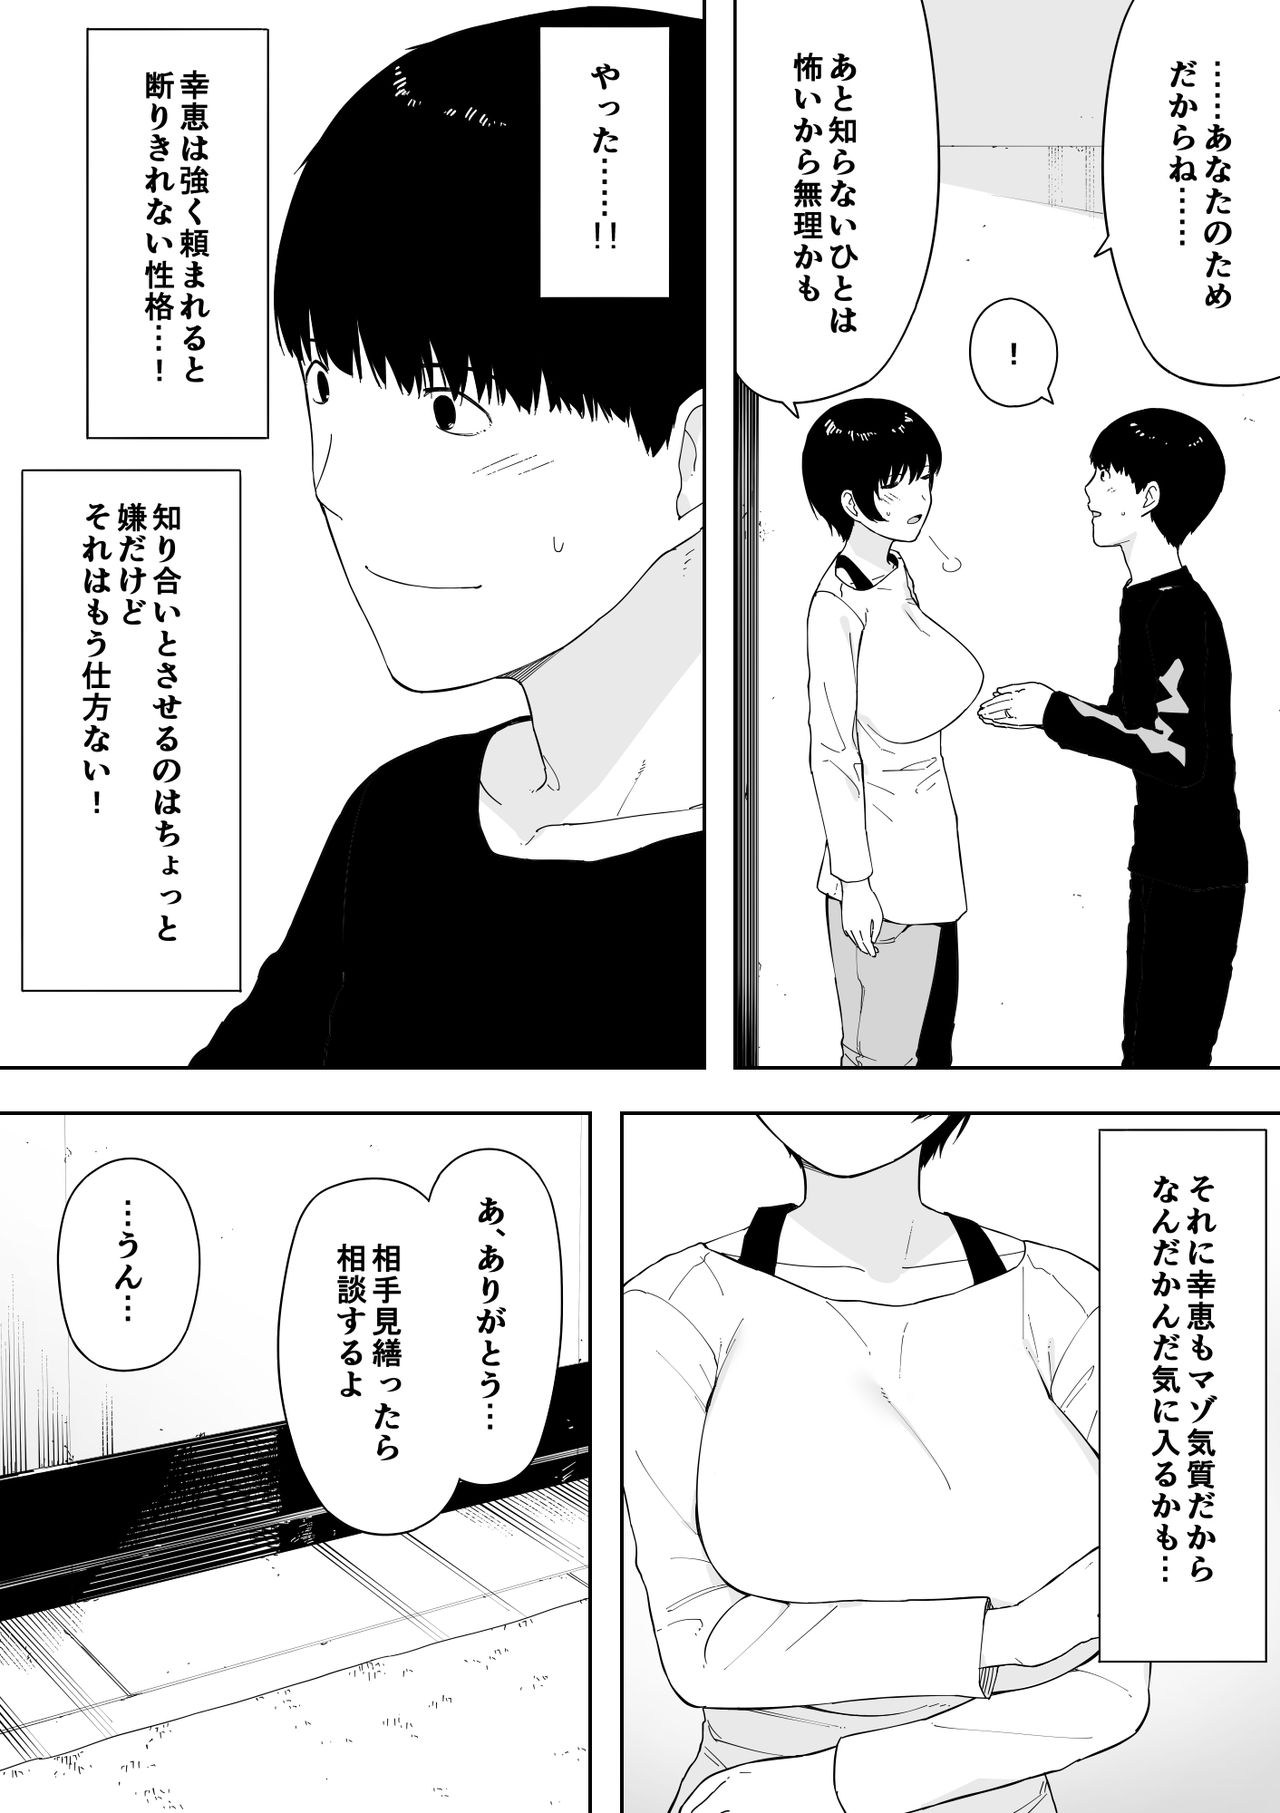 [NT Labo (NT Robo)] Aisai, Doui no Ue, Netorare 4 ~Iwashita-ke no Haha~ page 12 full